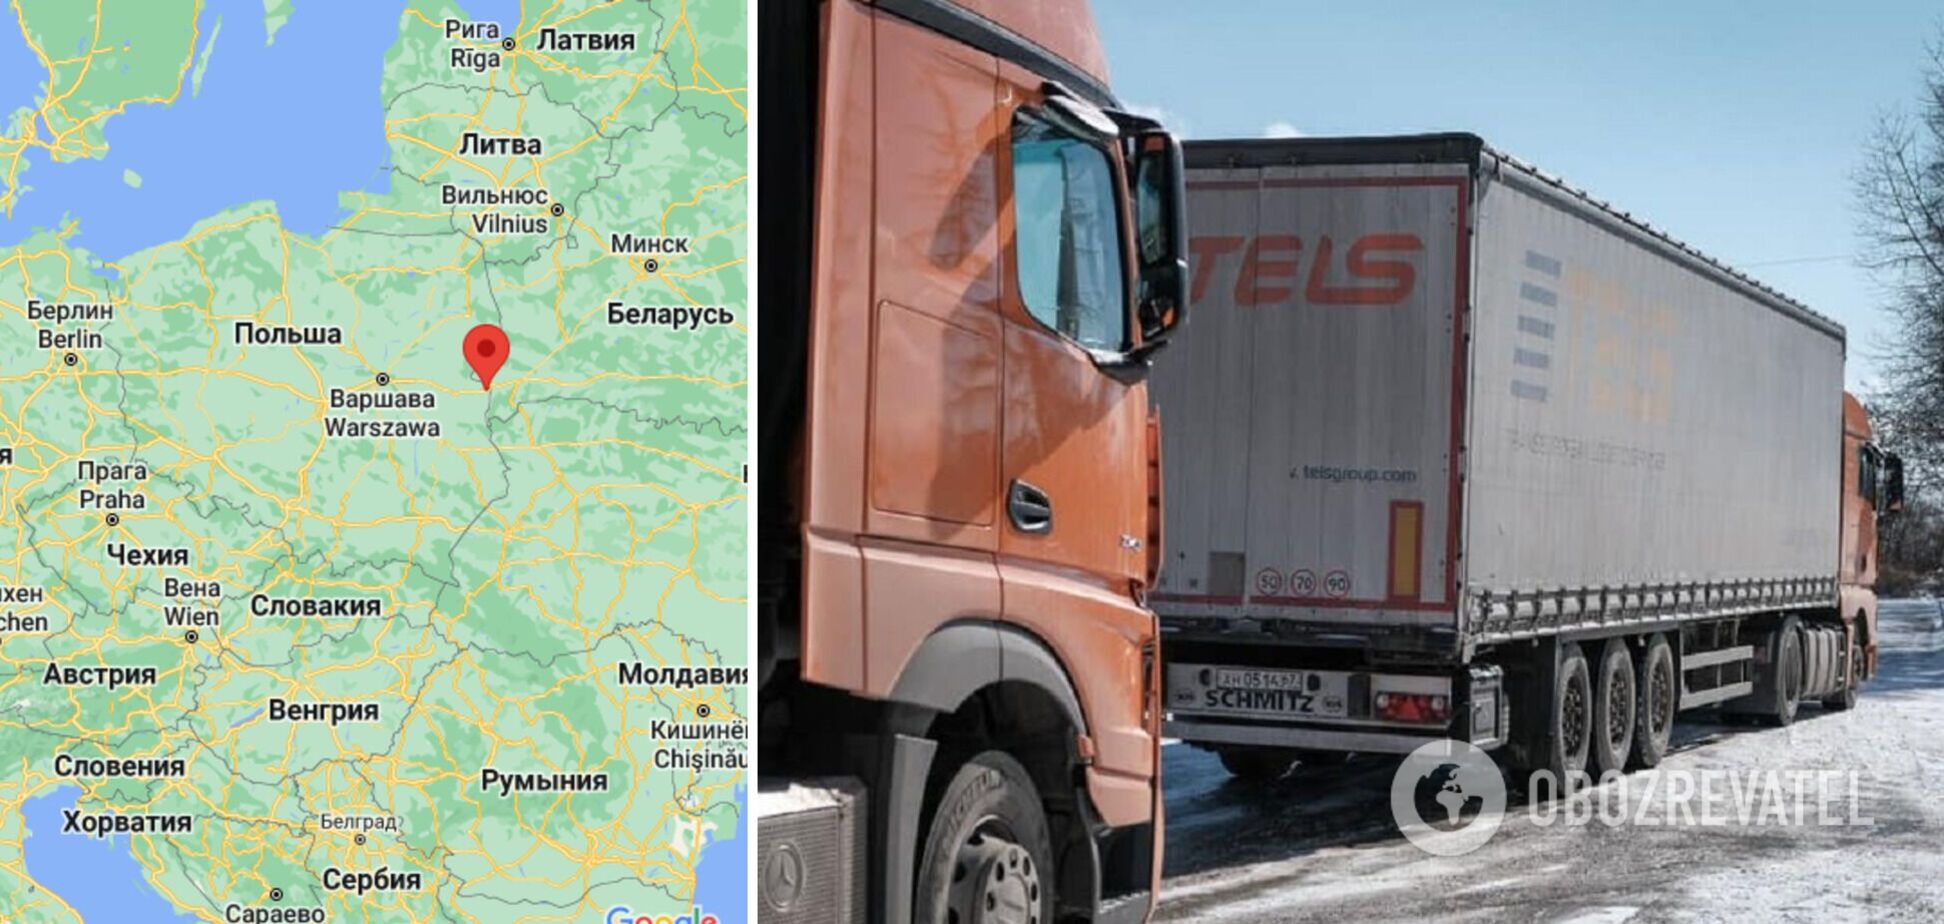 Фури на російських номерах везуть підозрілі вантажі з Німеччини до Білорусі